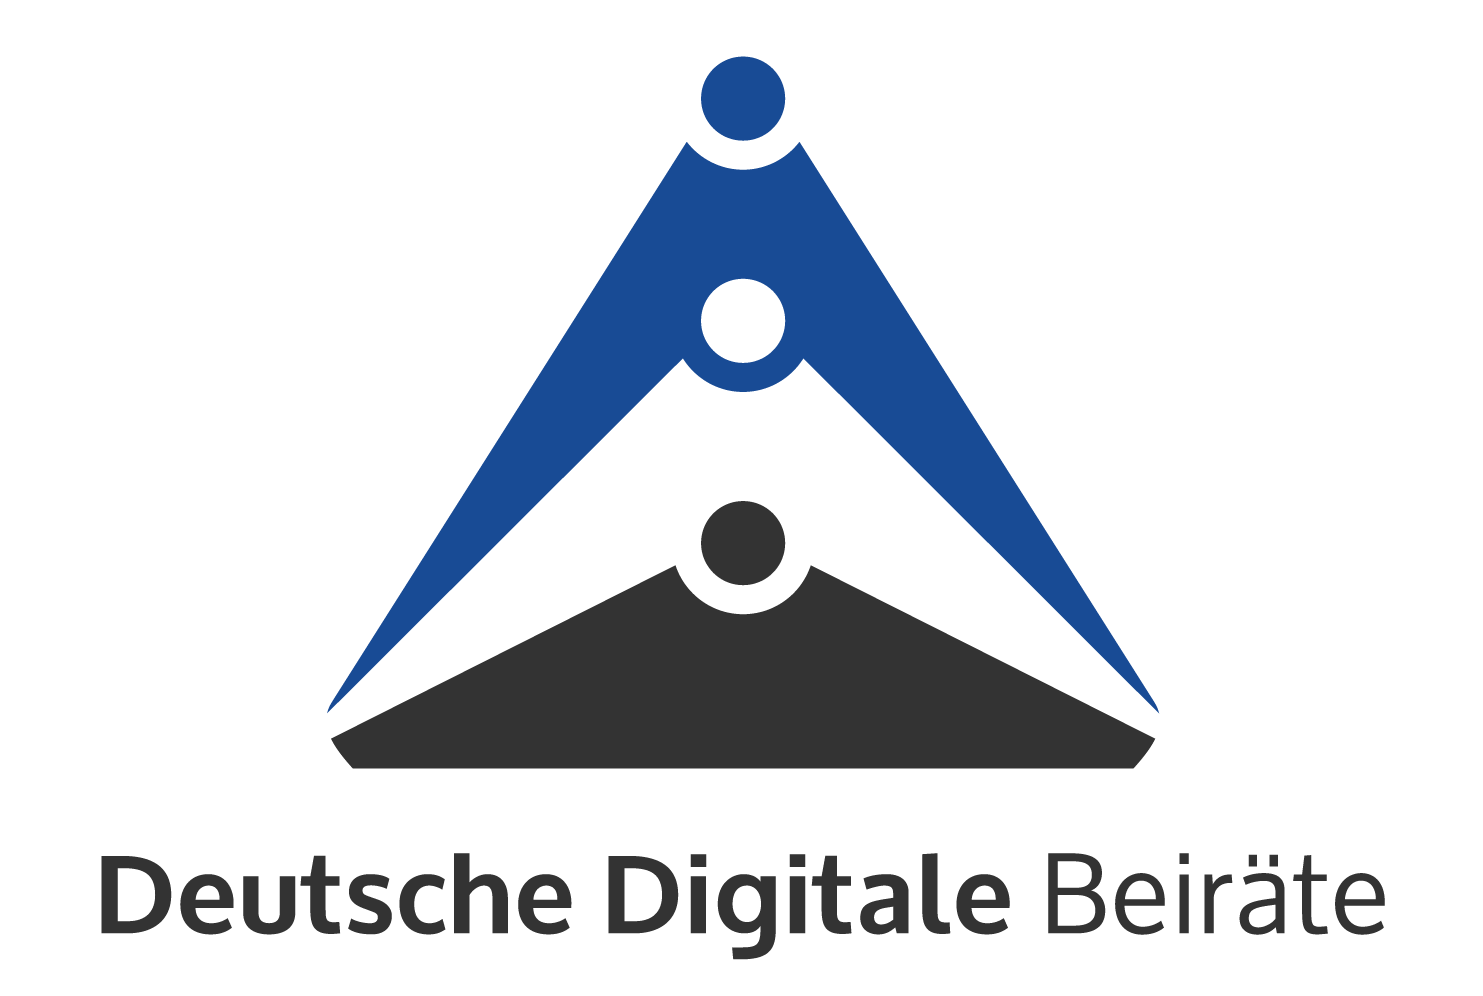 Peter Roos als zertifiziertes Mitglied bei den German Digital Board Advisors (Deutsche Digitale Beiräte) aufgenommen